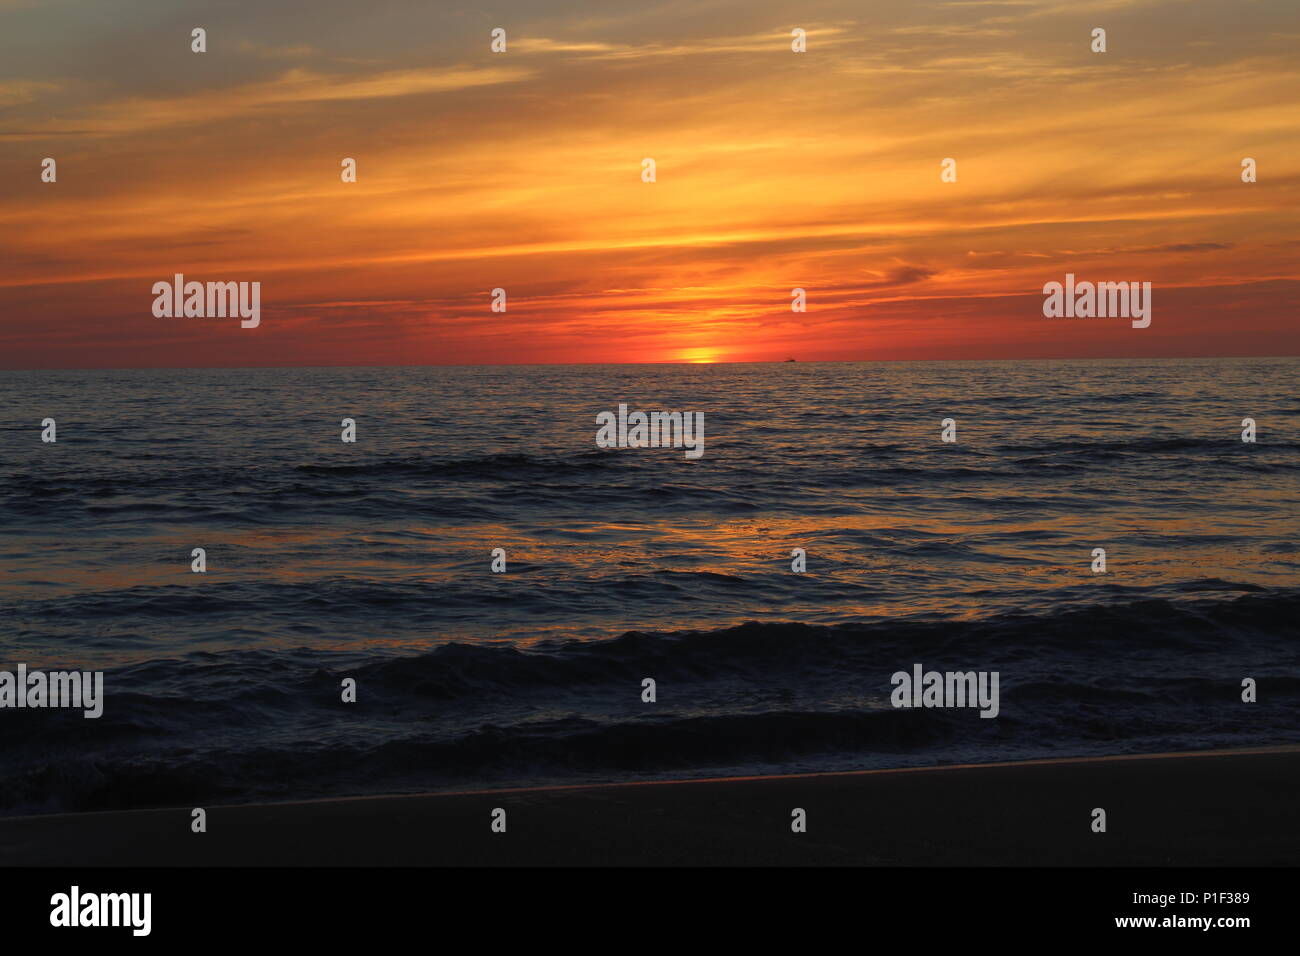 Dieses Bild zeigt einen wunderschönen Sonnenuntergang an der Westküste von Mexiko, Mit einer schönen Anzeige von warmen Farben über eine harmonische Meer. Stockfoto